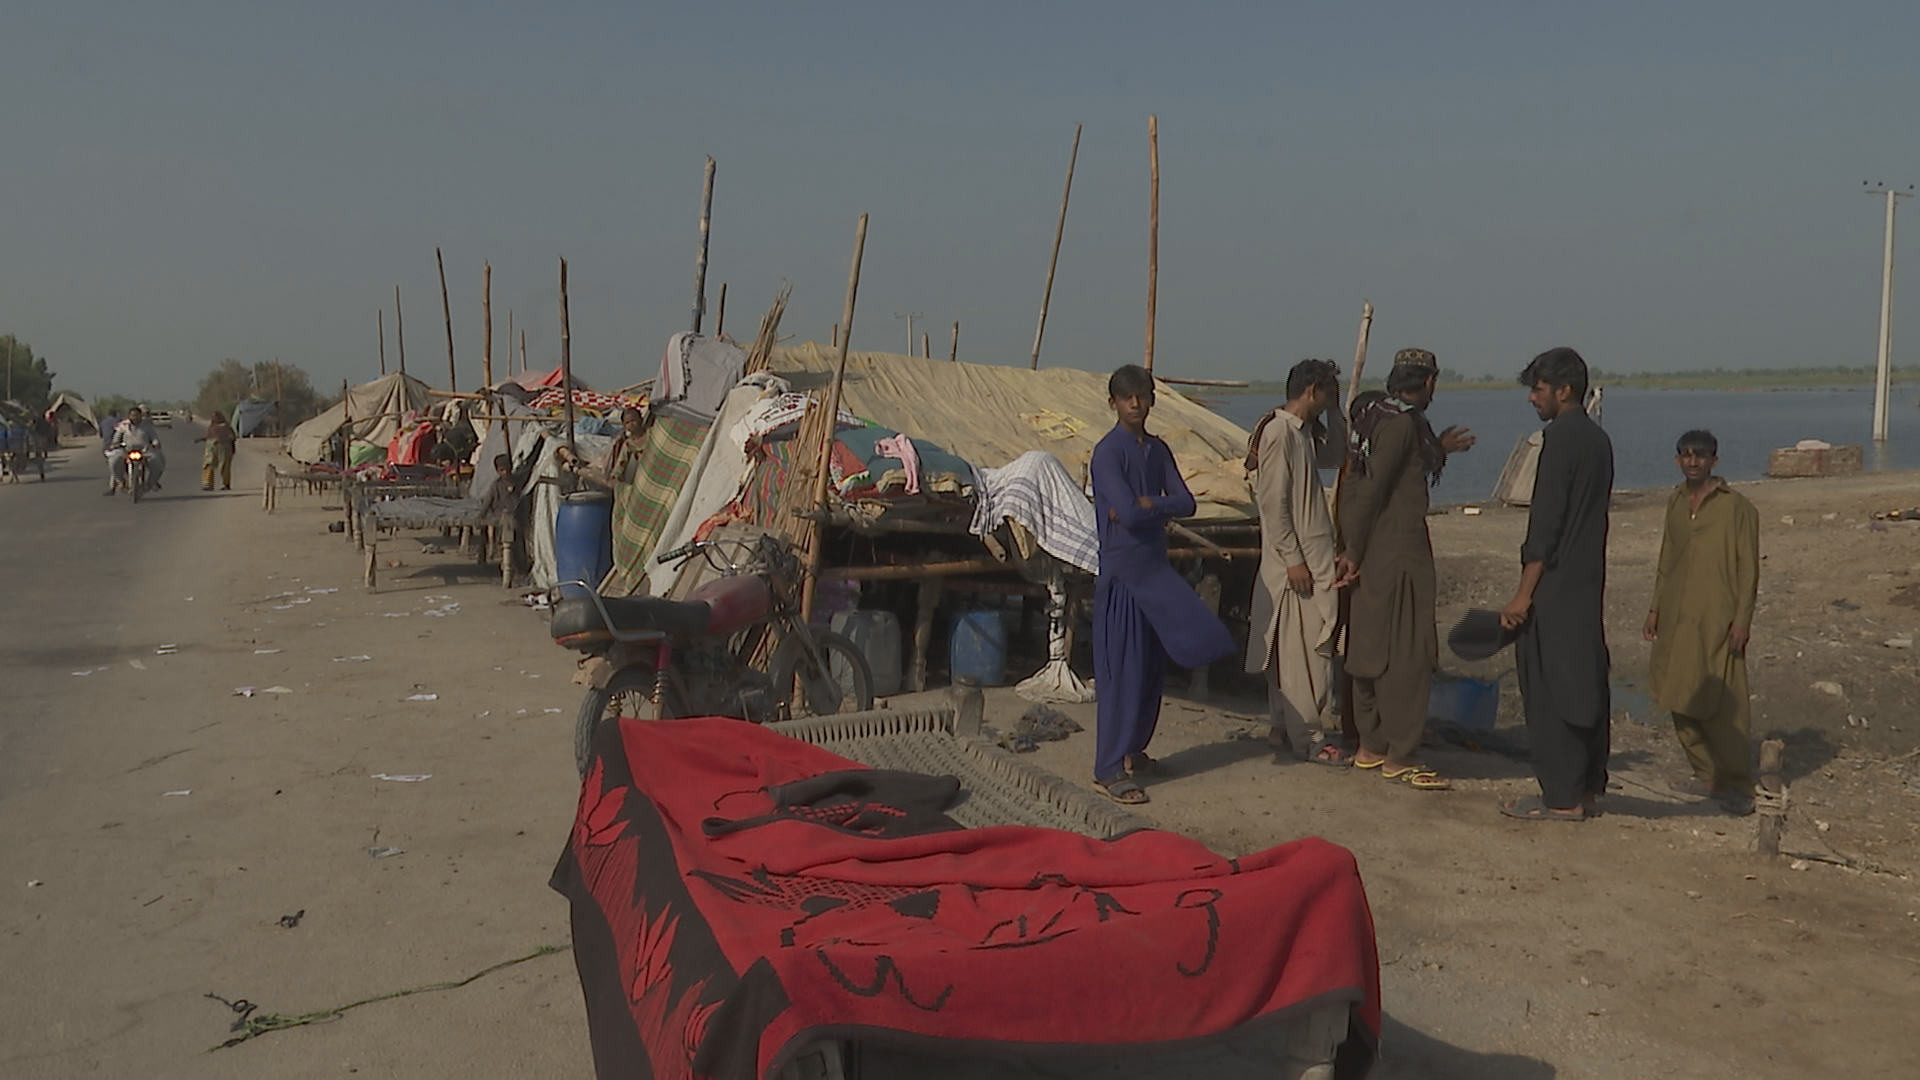 도로 위 텐트촌 모습. 텐트에 쓰이는 천막 하나 지원받지 못한 상황.